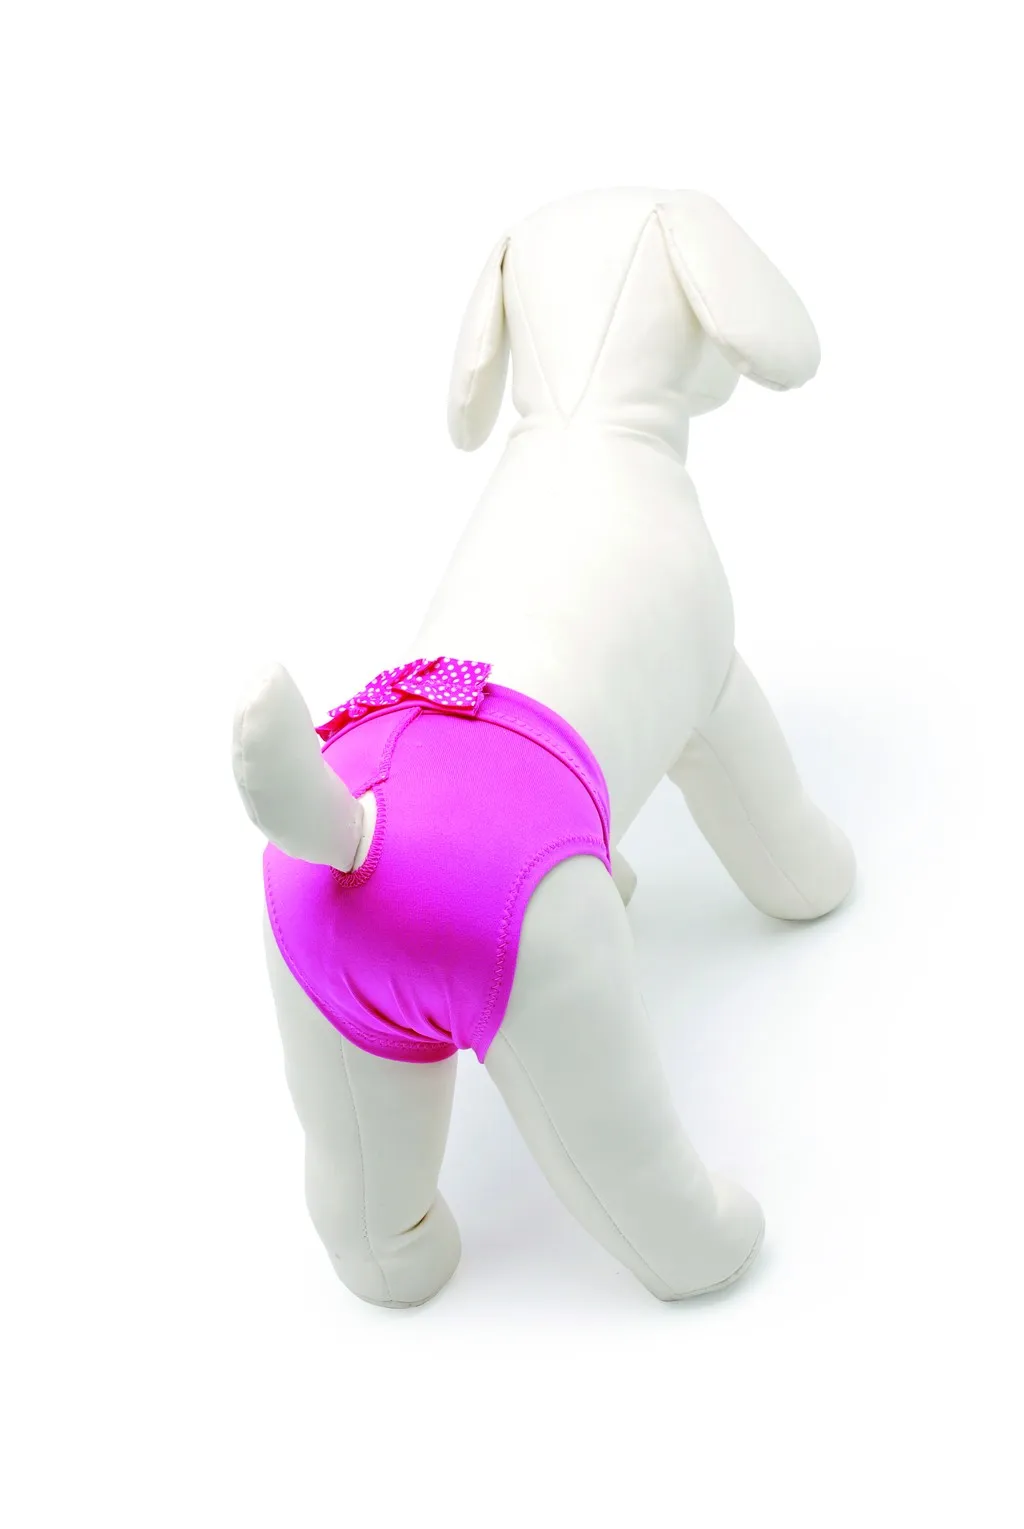 Camon Microfiber Dog Pants with Bow - бански/ хигиенни гащи за разгонени женски кучета, микрофибър розови 36 см. 2